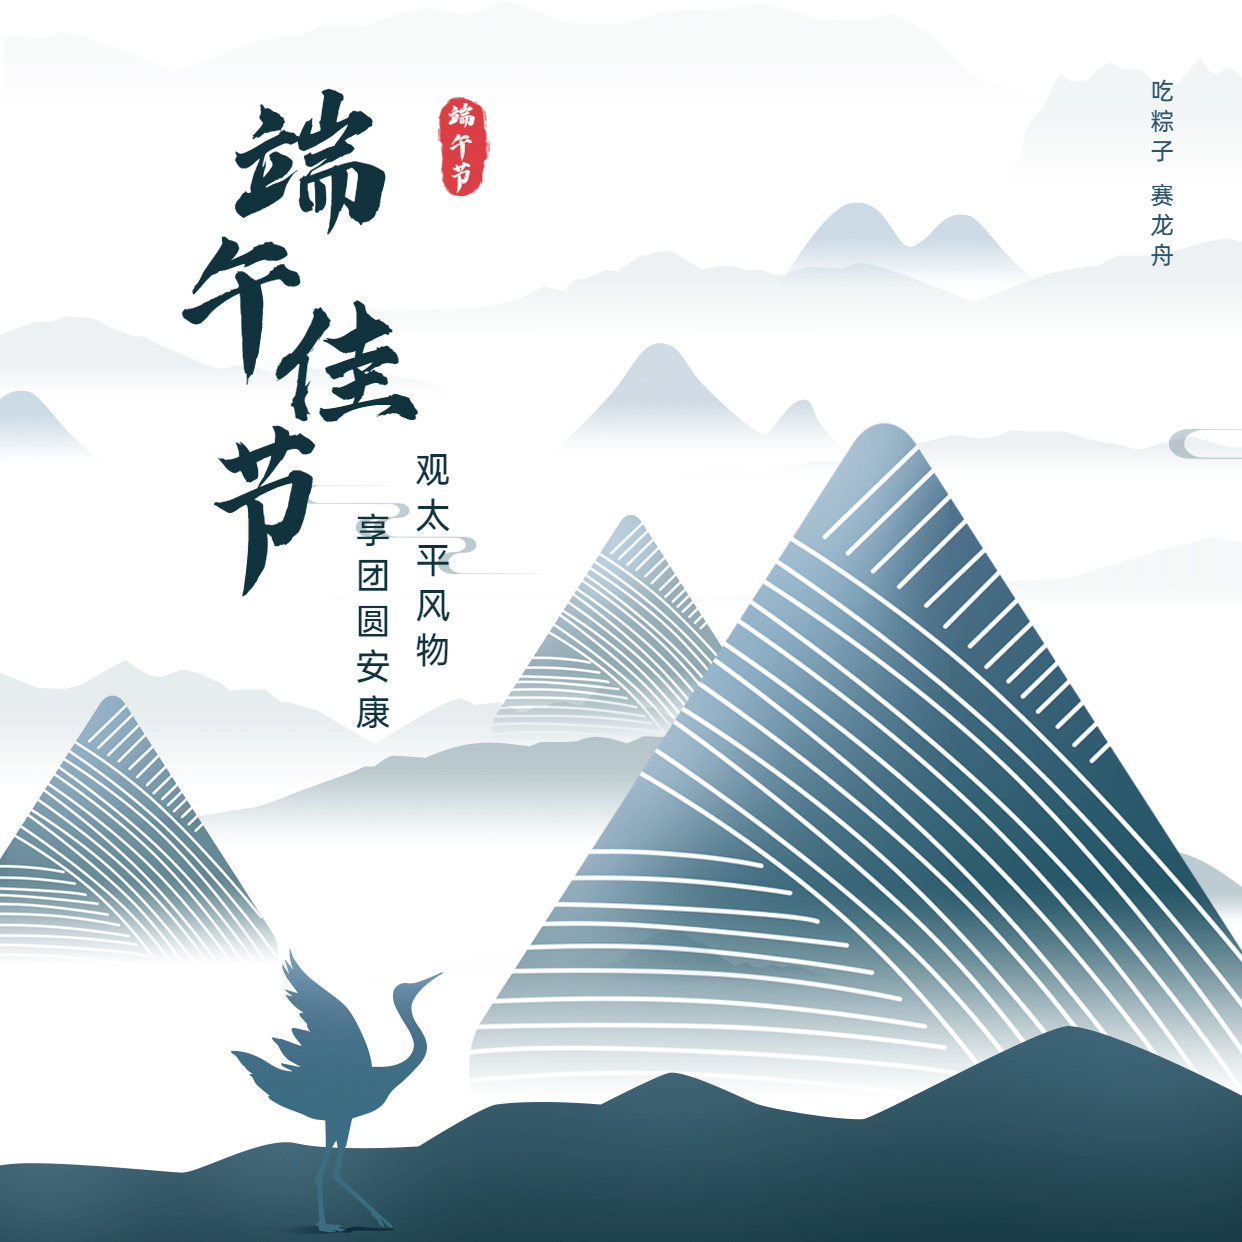 端午节安康祝福问候中国风方形海报